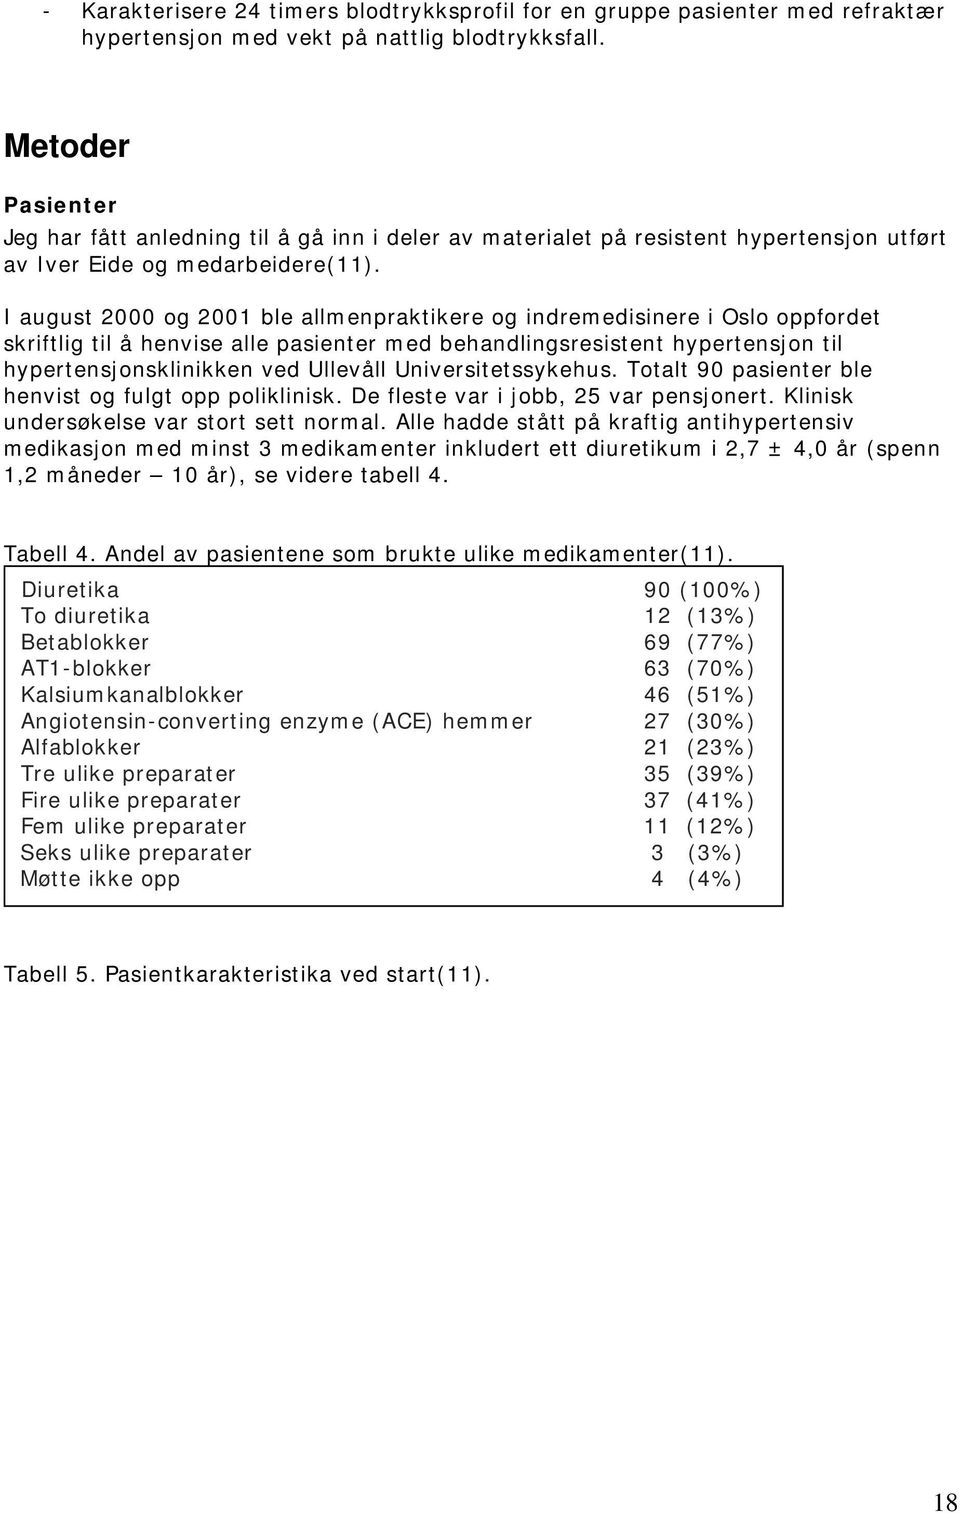 I august 2000 og 2001 ble allmenpraktikere og indremedisinere i Oslo oppfordet skriftlig til å henvise alle pasienter med behandlingsresistent hypertensjon til hypertensjonsklinikken ved Ullevåll